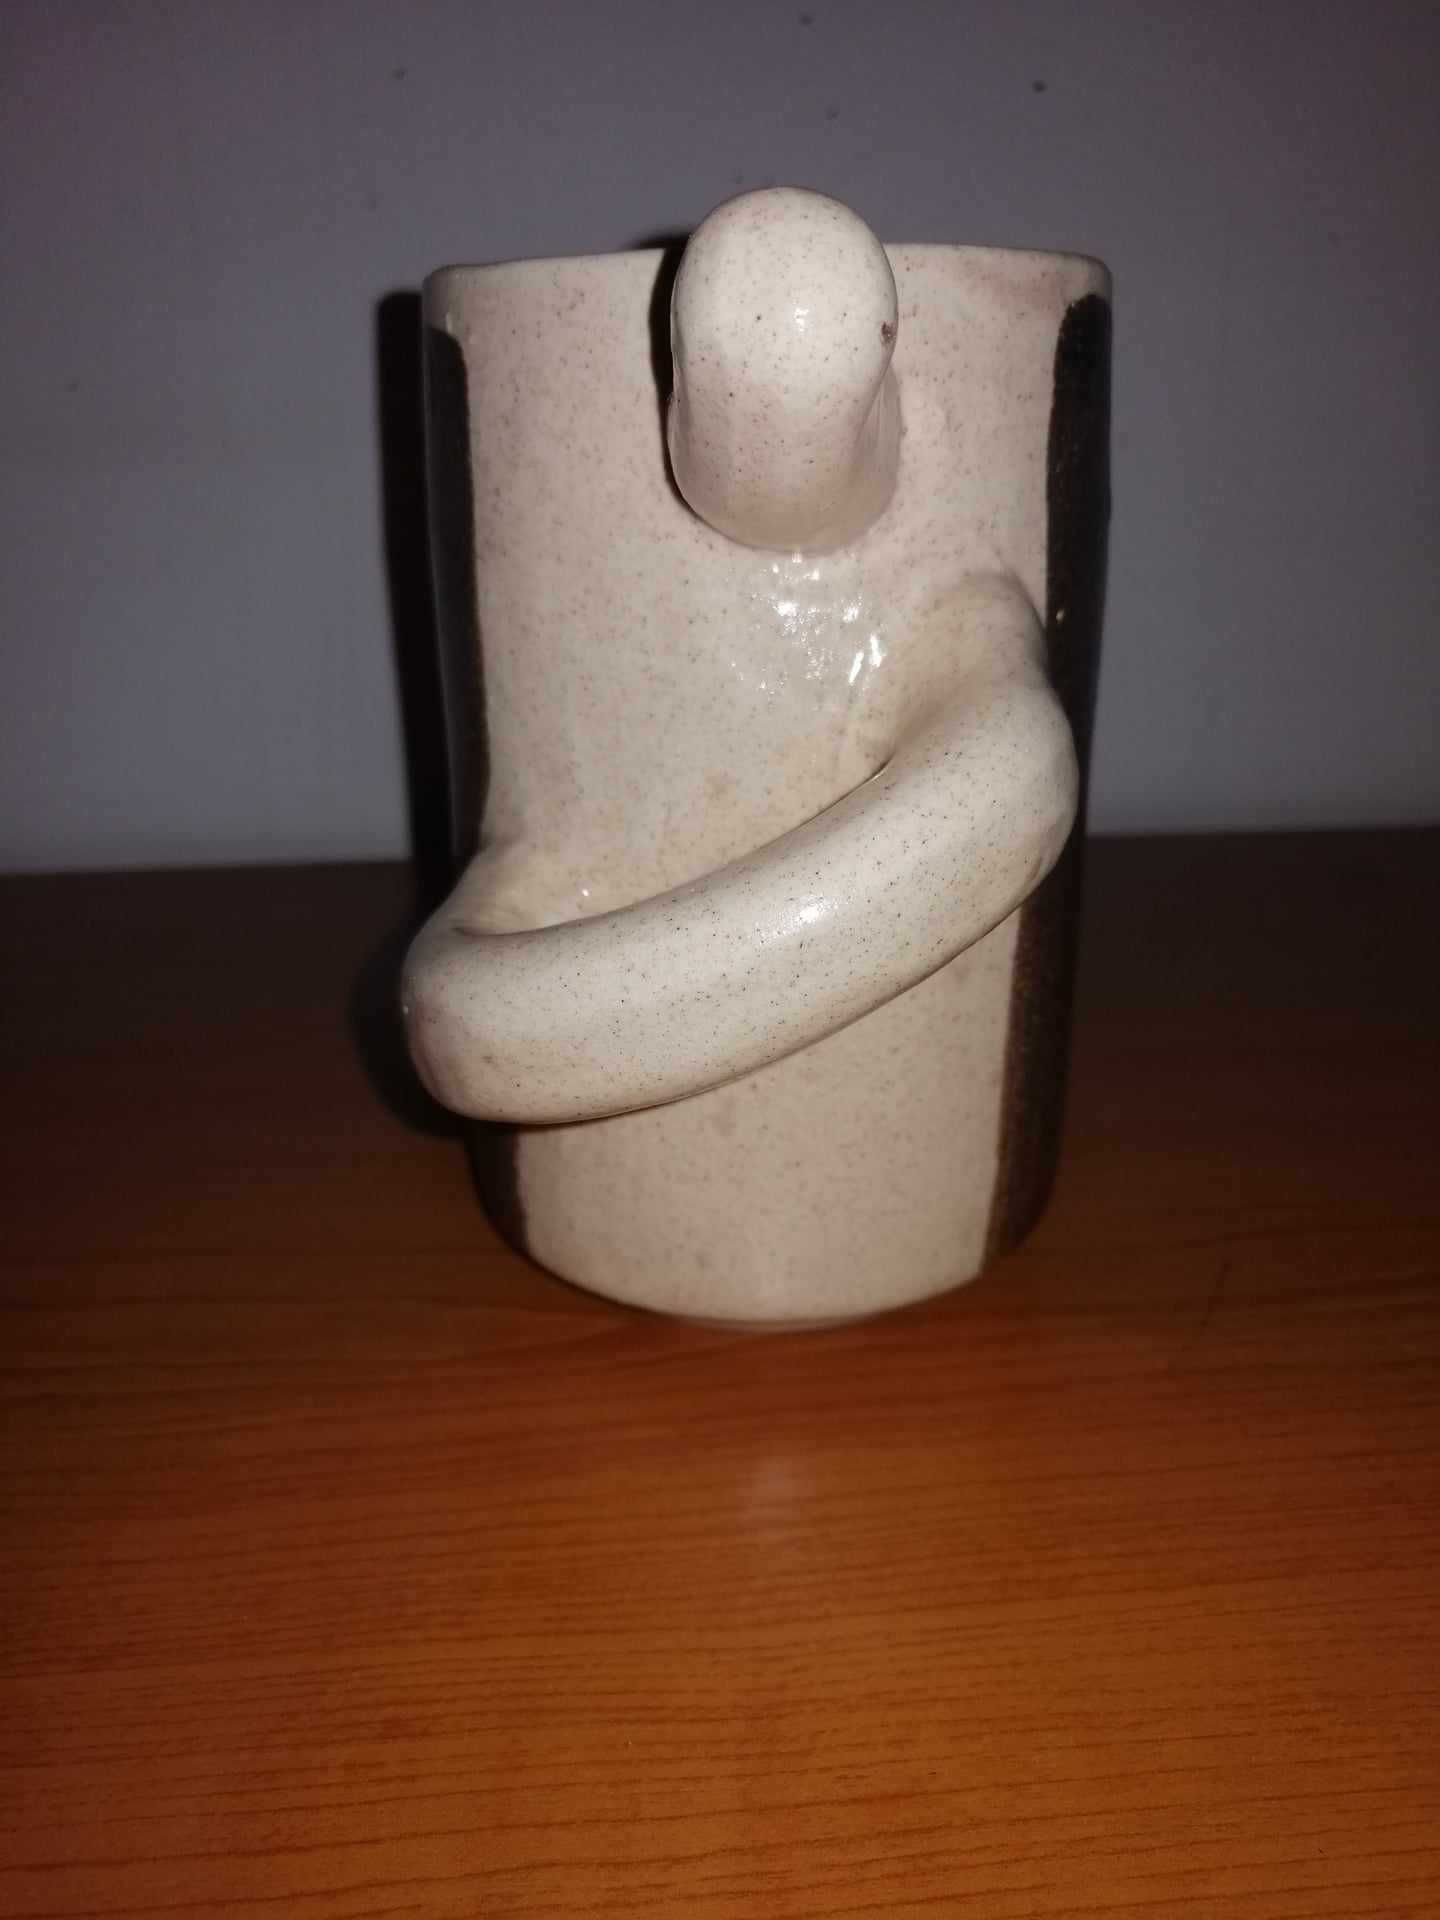 6x ceasca halba ceramica Pollas Design maner maimuta nas gura